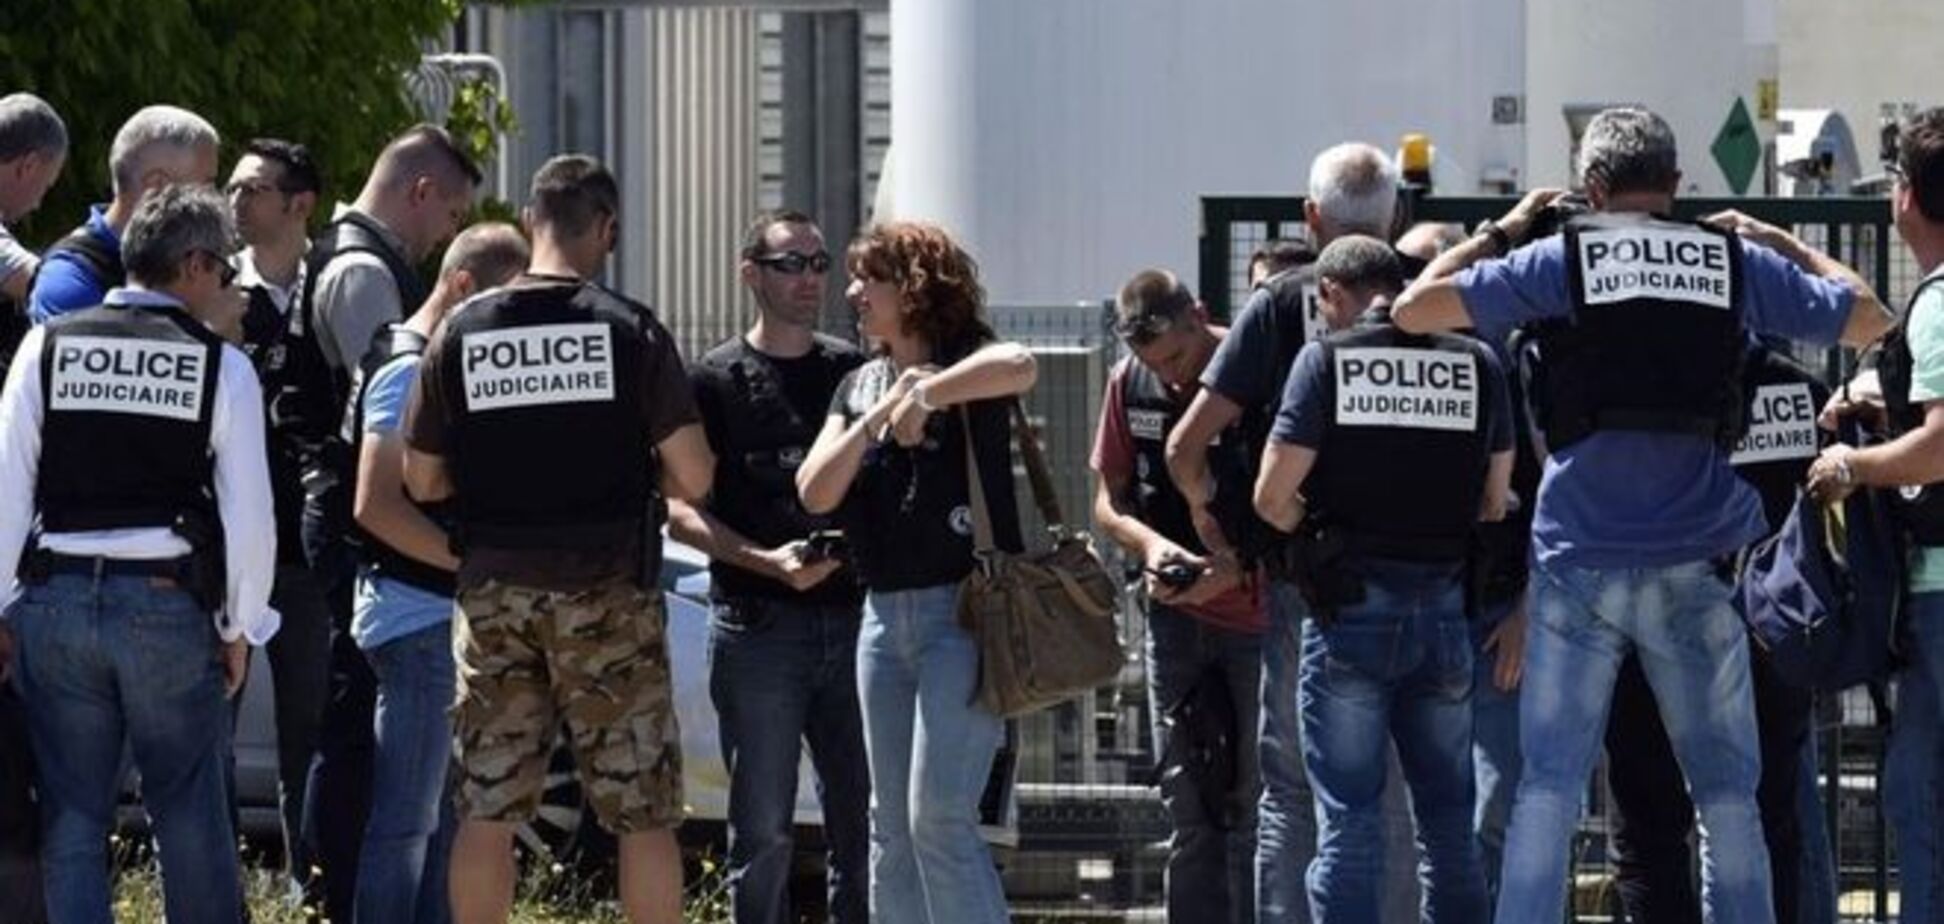 Теракт во Франции: убийца рассказал о жутком селфи с отрезанной головой